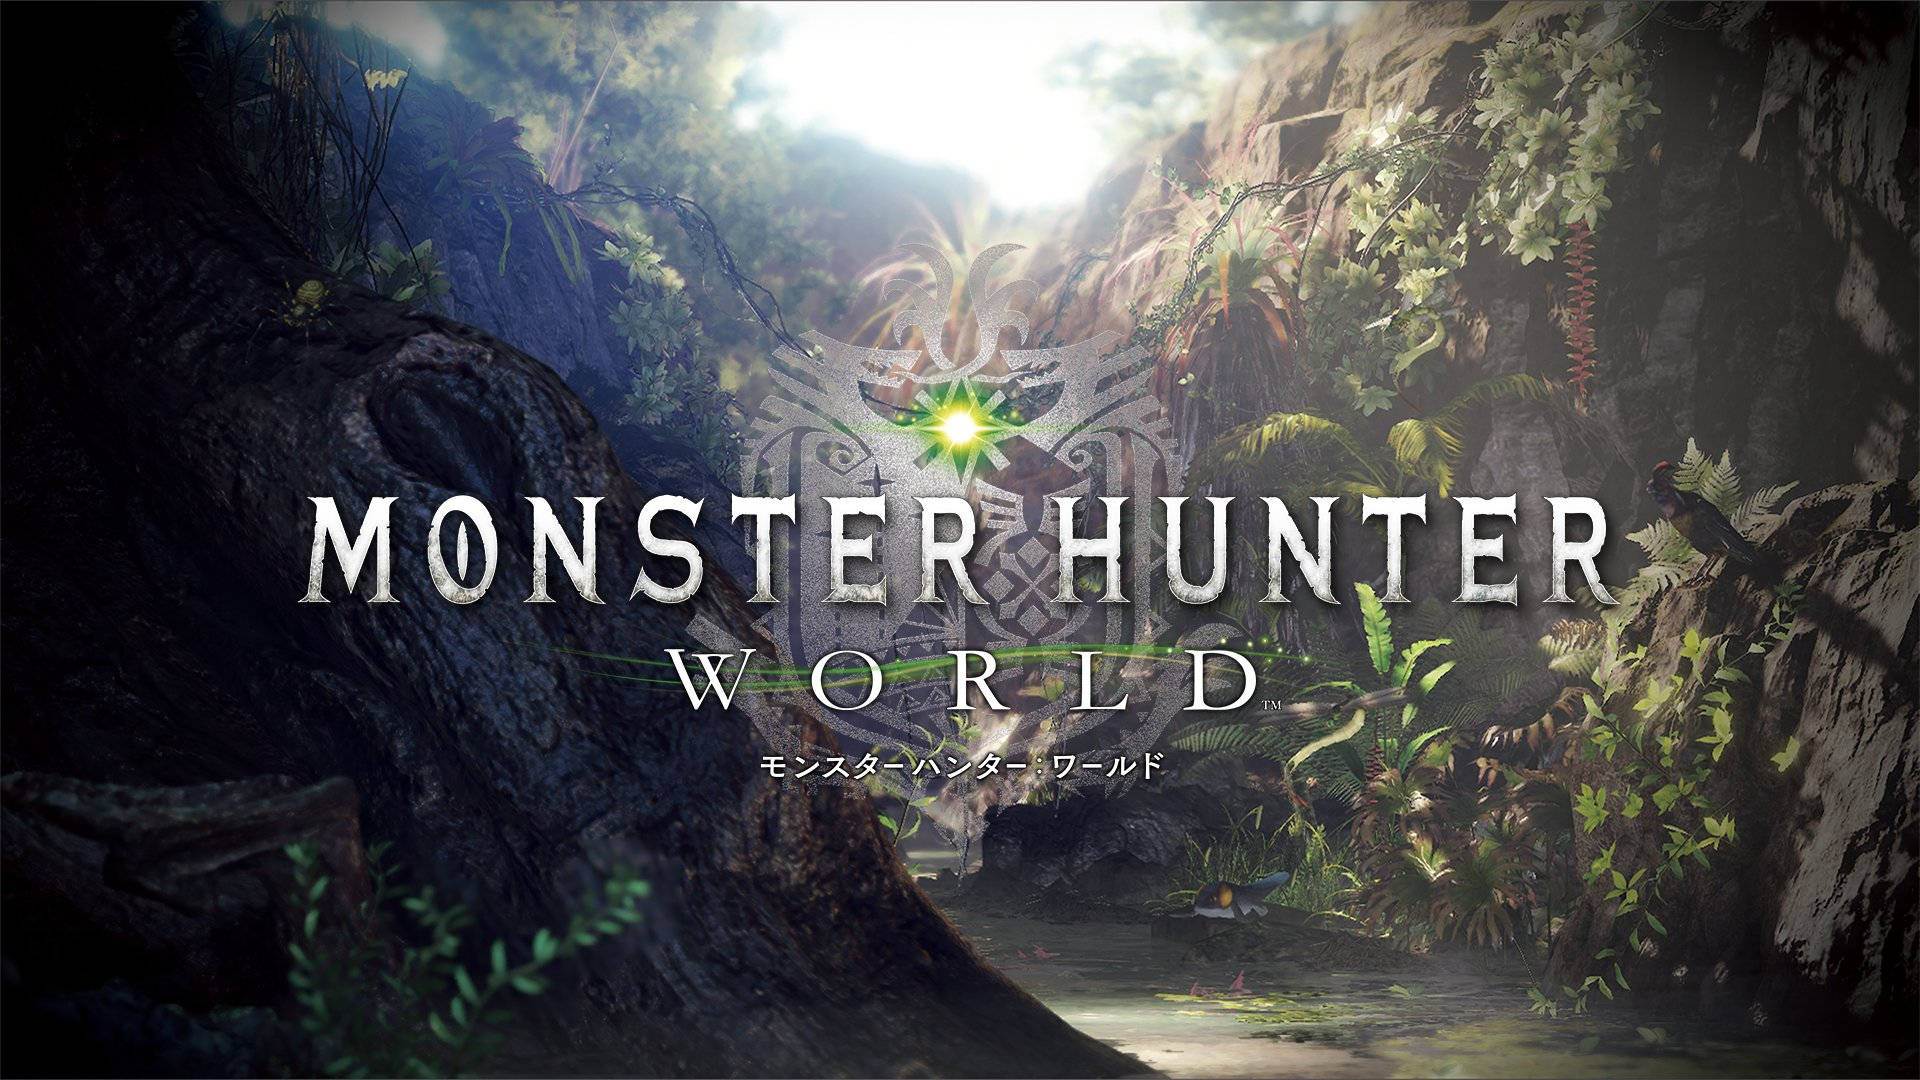 Únetea La Cacería En Monster Hunter World Iceborne Y Lleva La Aventura Al Siguiente Nivel Fondo de pantalla